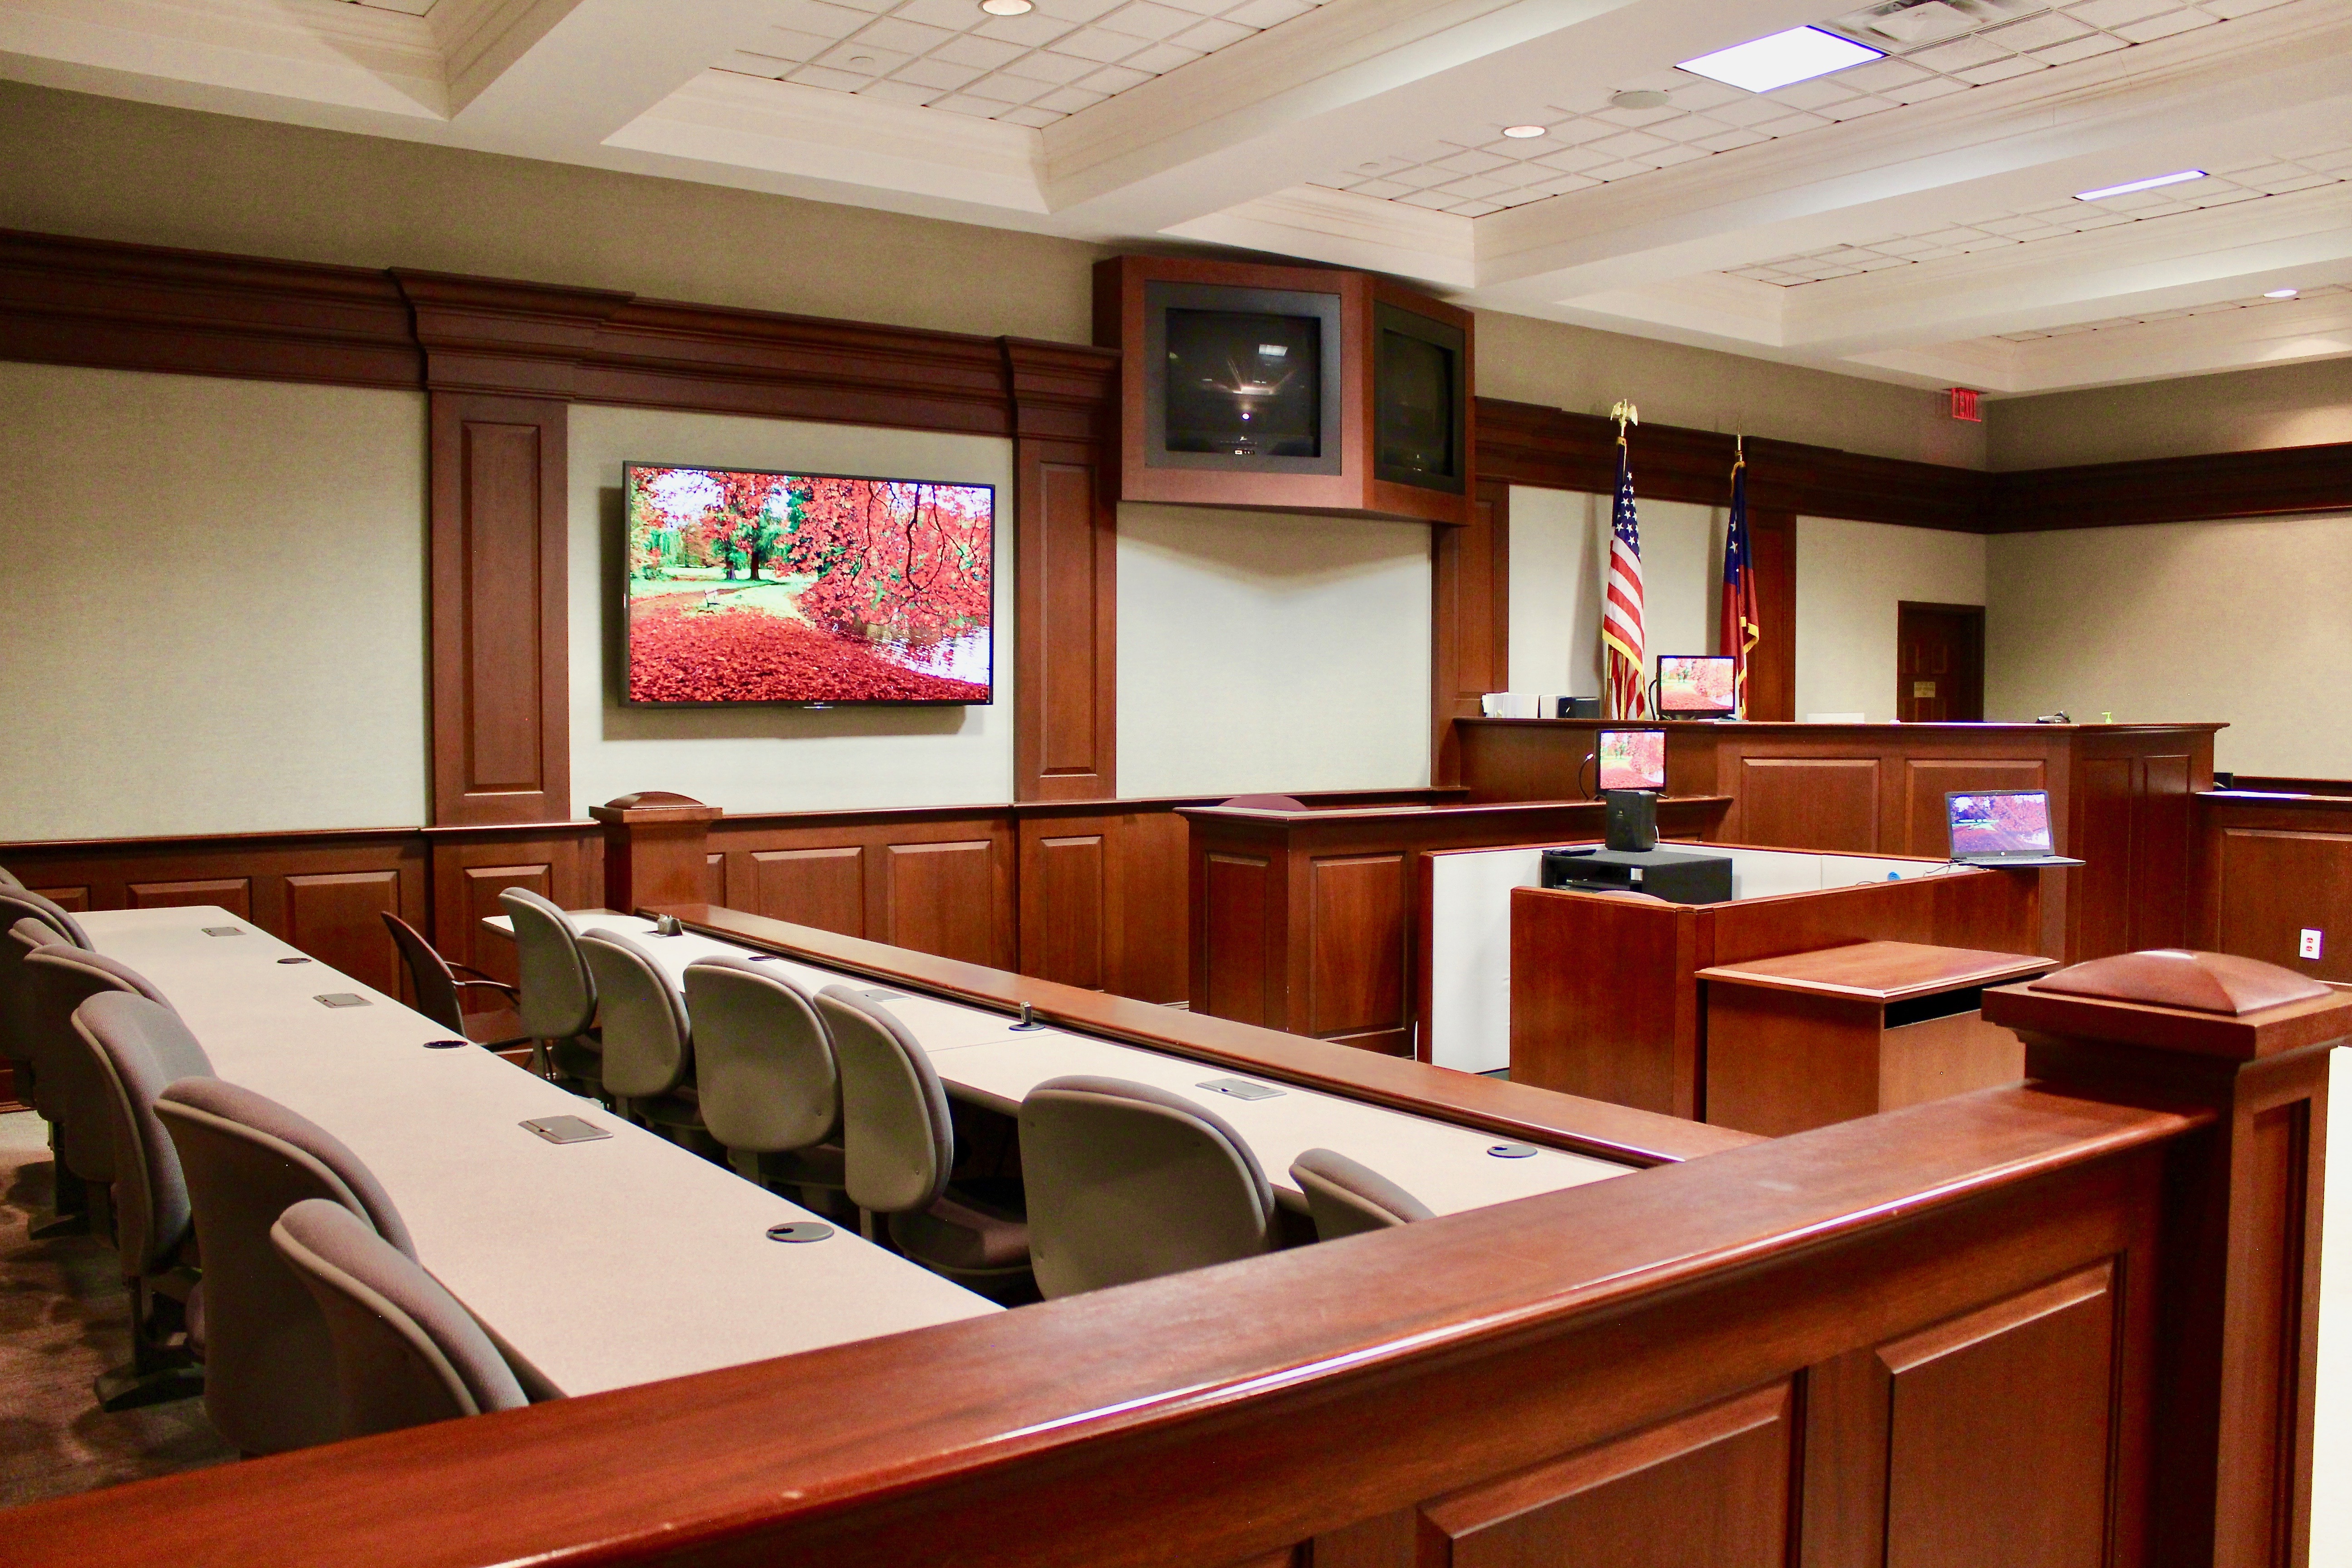 Slider courtrooms